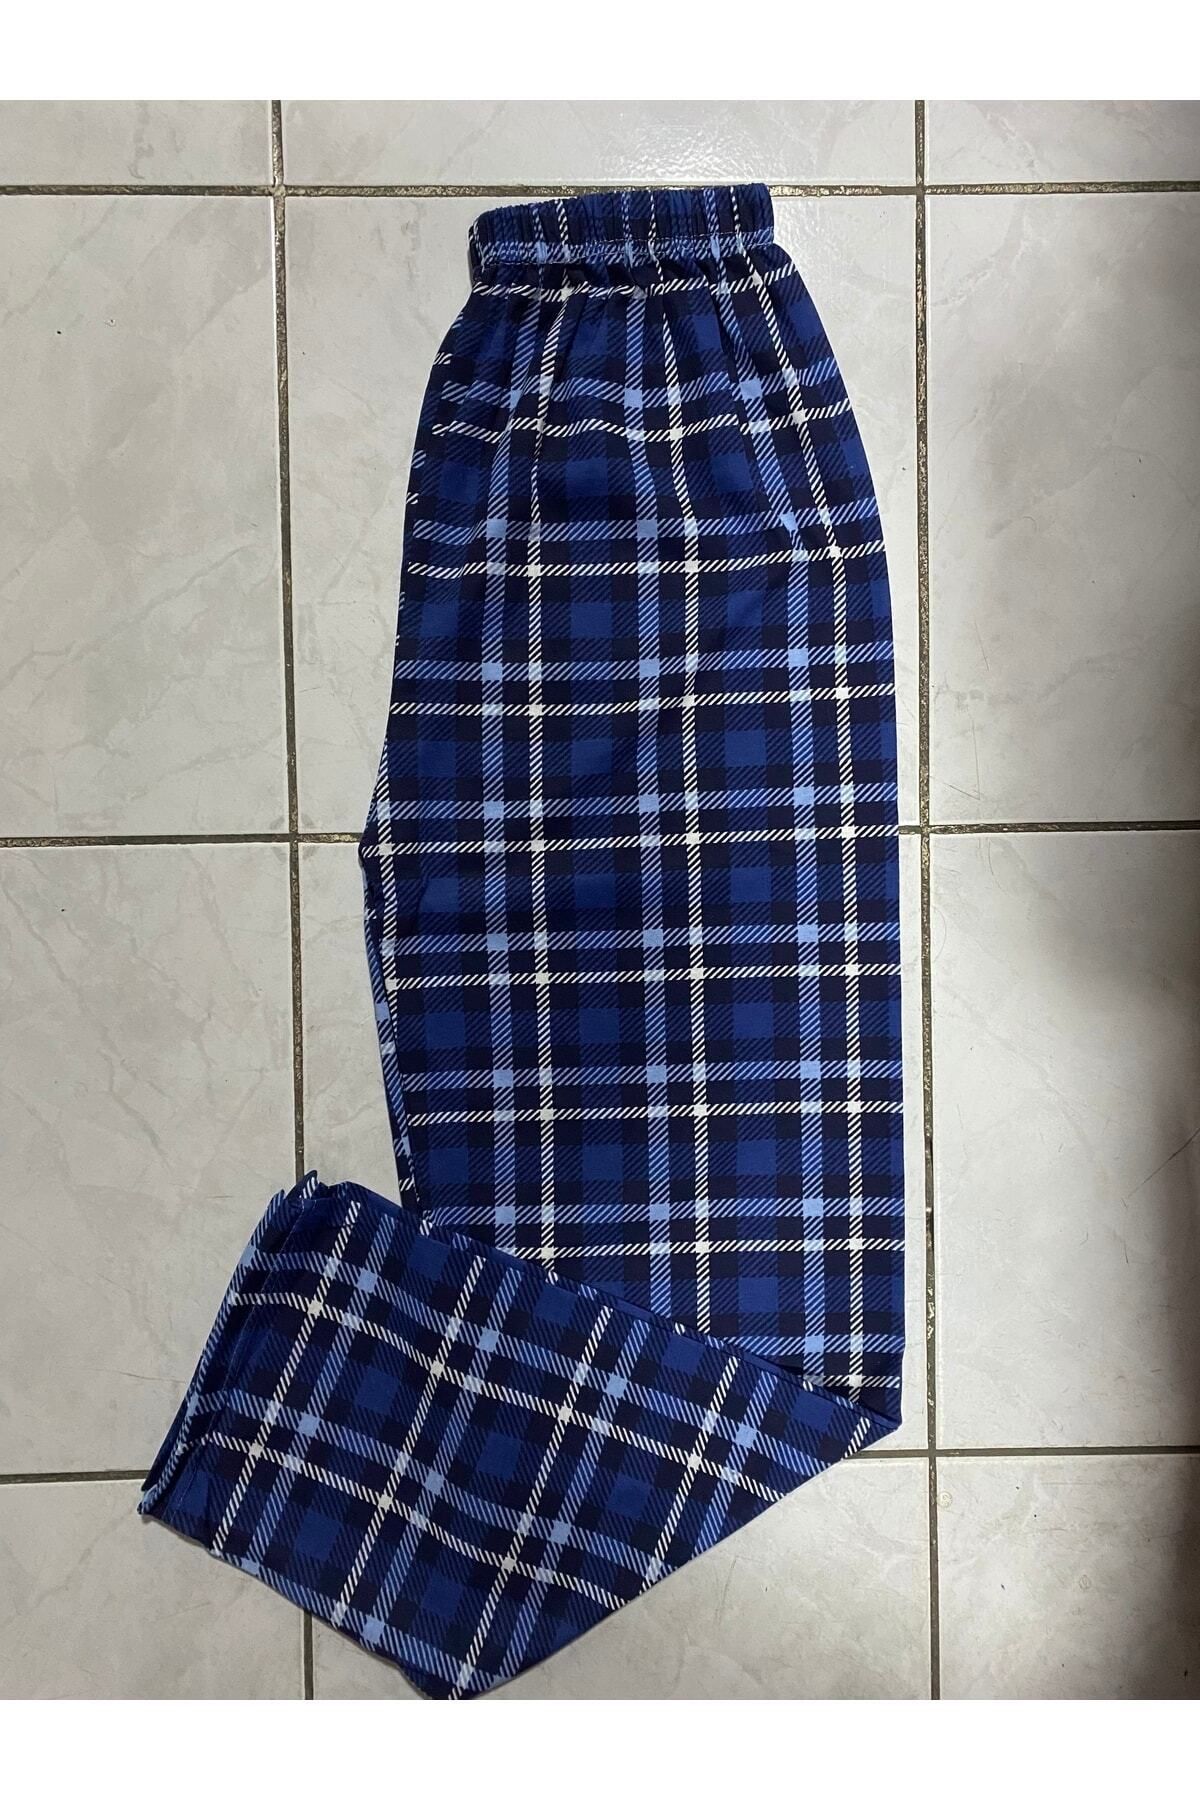 Öztürk şendil iç giyim Unisex Kareli Tek Alt S/m Beden Penye Pijama